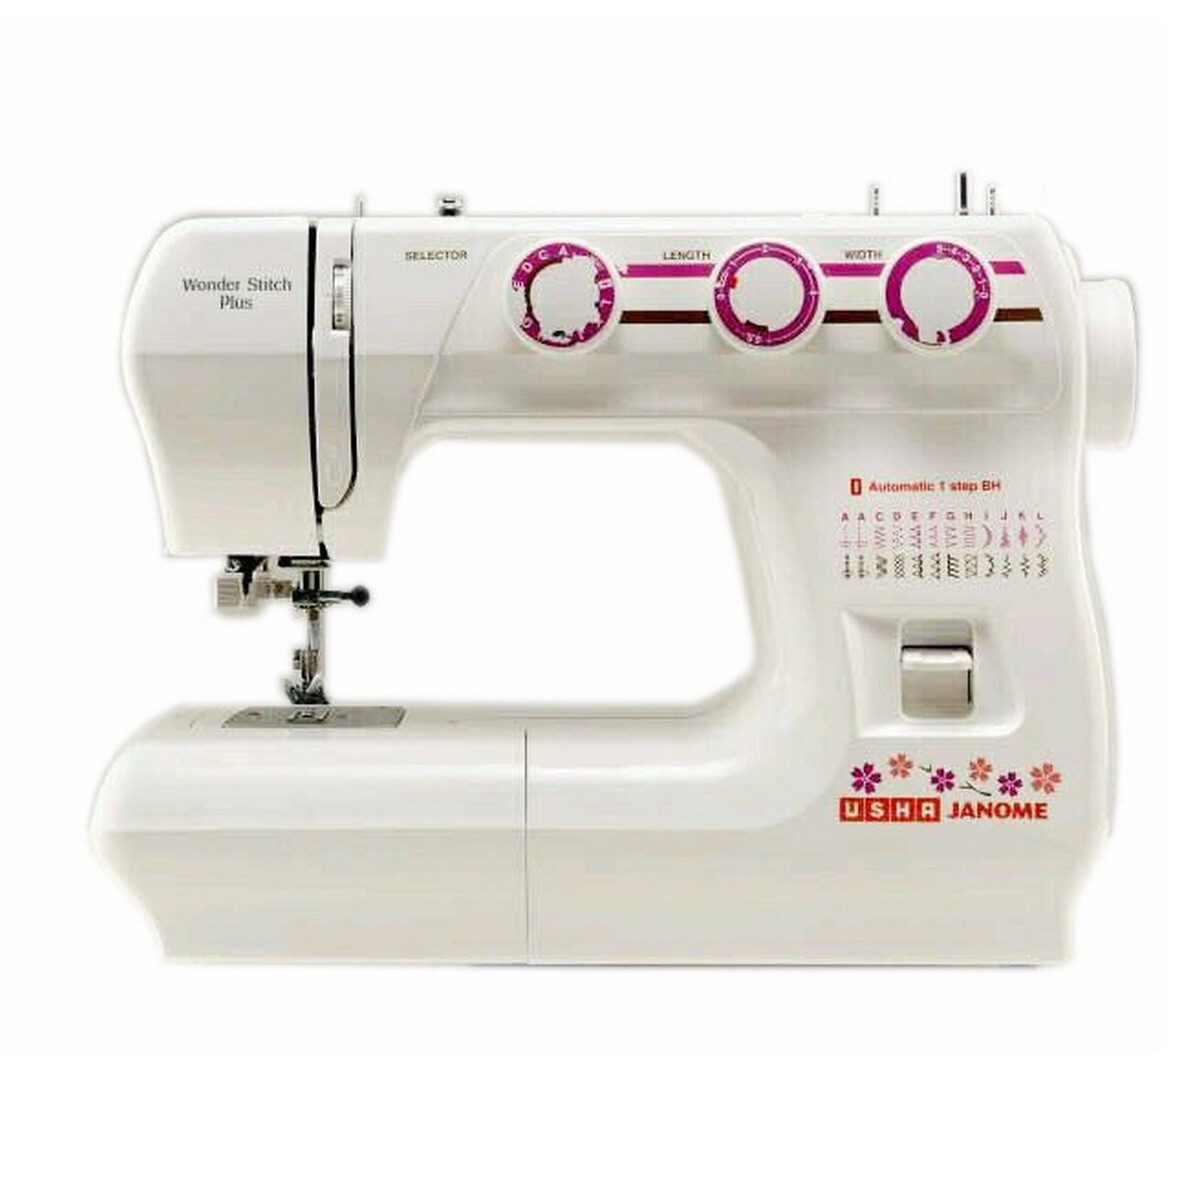 Sewing Machine Style Stitch - USHA